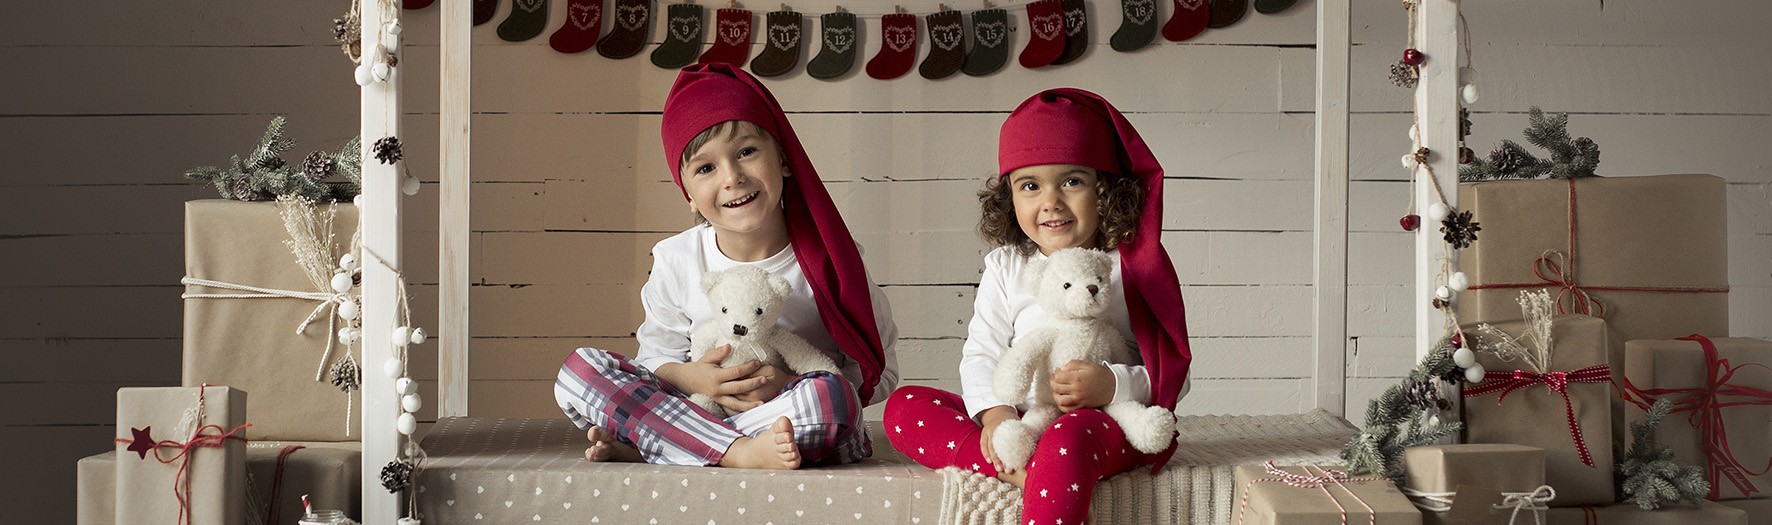 Sesión de fotos de navidad en Murcia + Fotografía infantil + Pablo y Olivia + Silvia Ferrer.